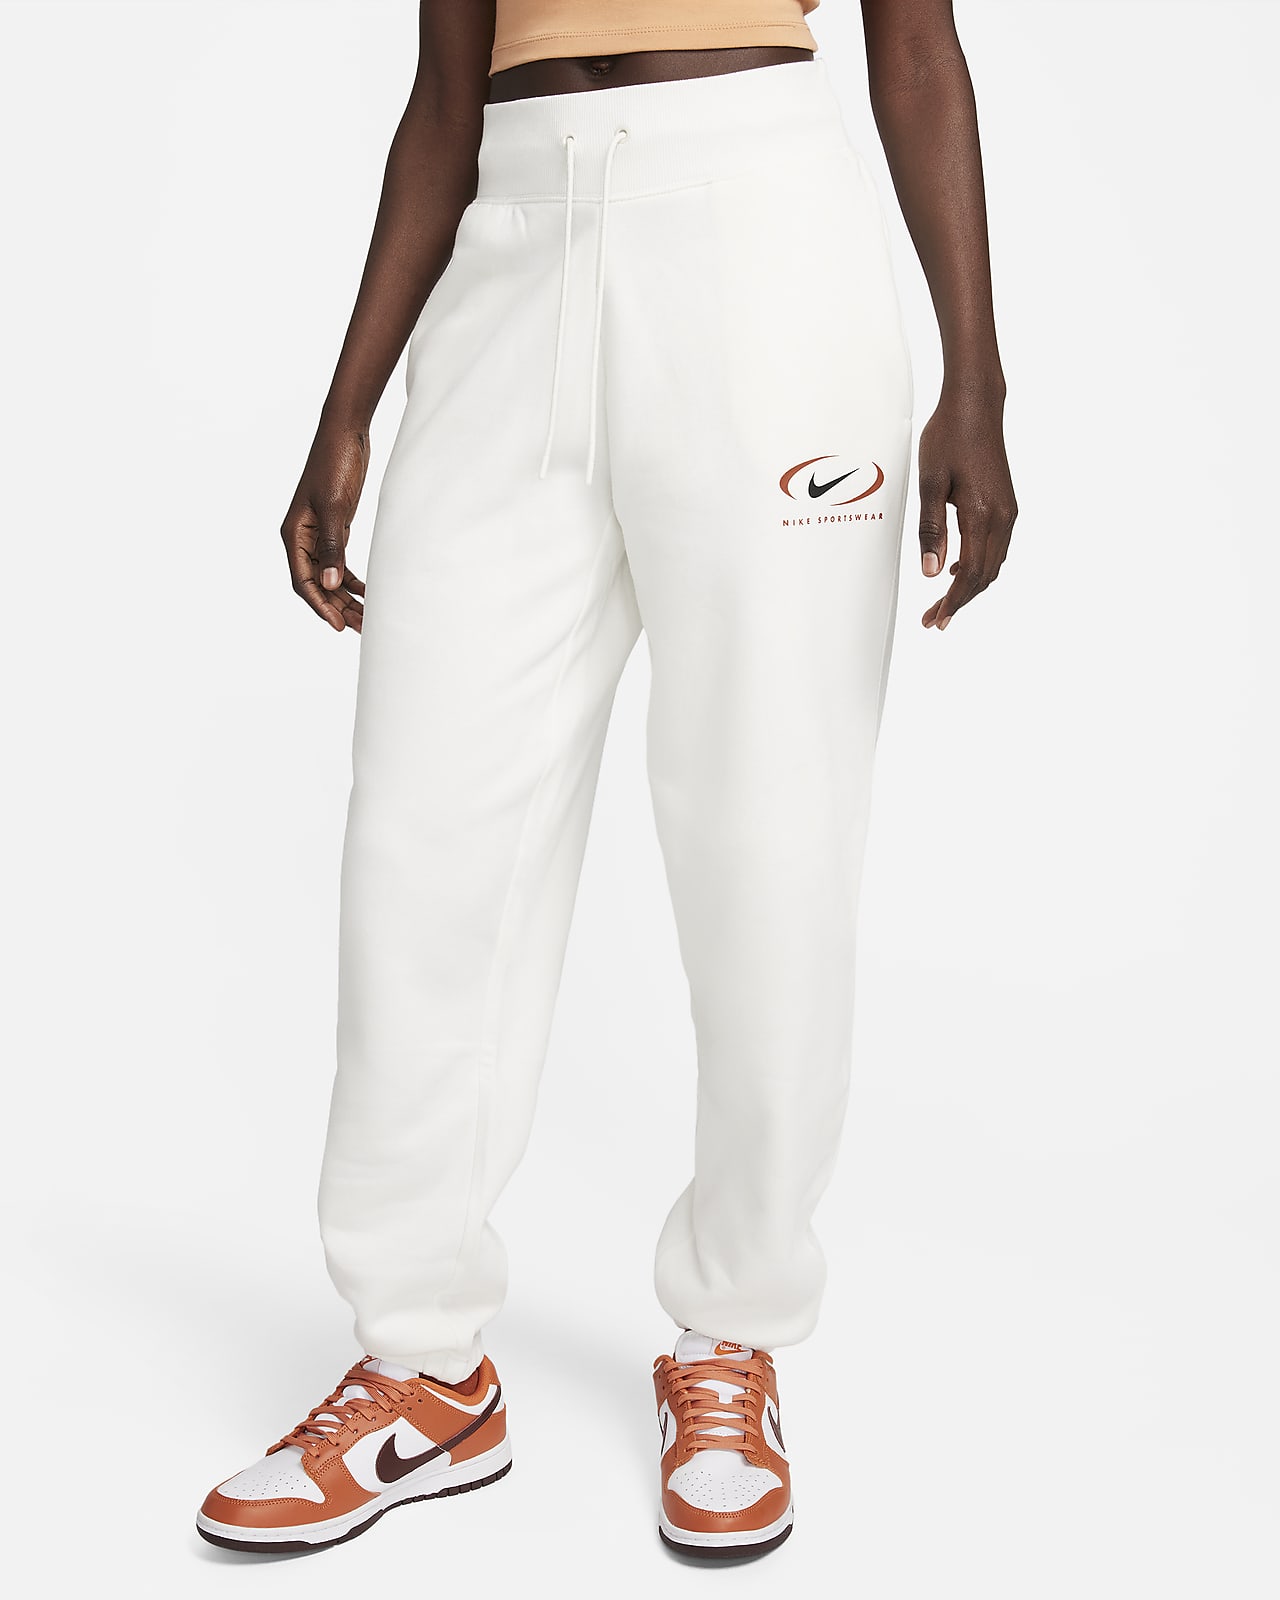 NIKE Women's Nike Sportswear Phoenix Fleece High-Waisted Swirl